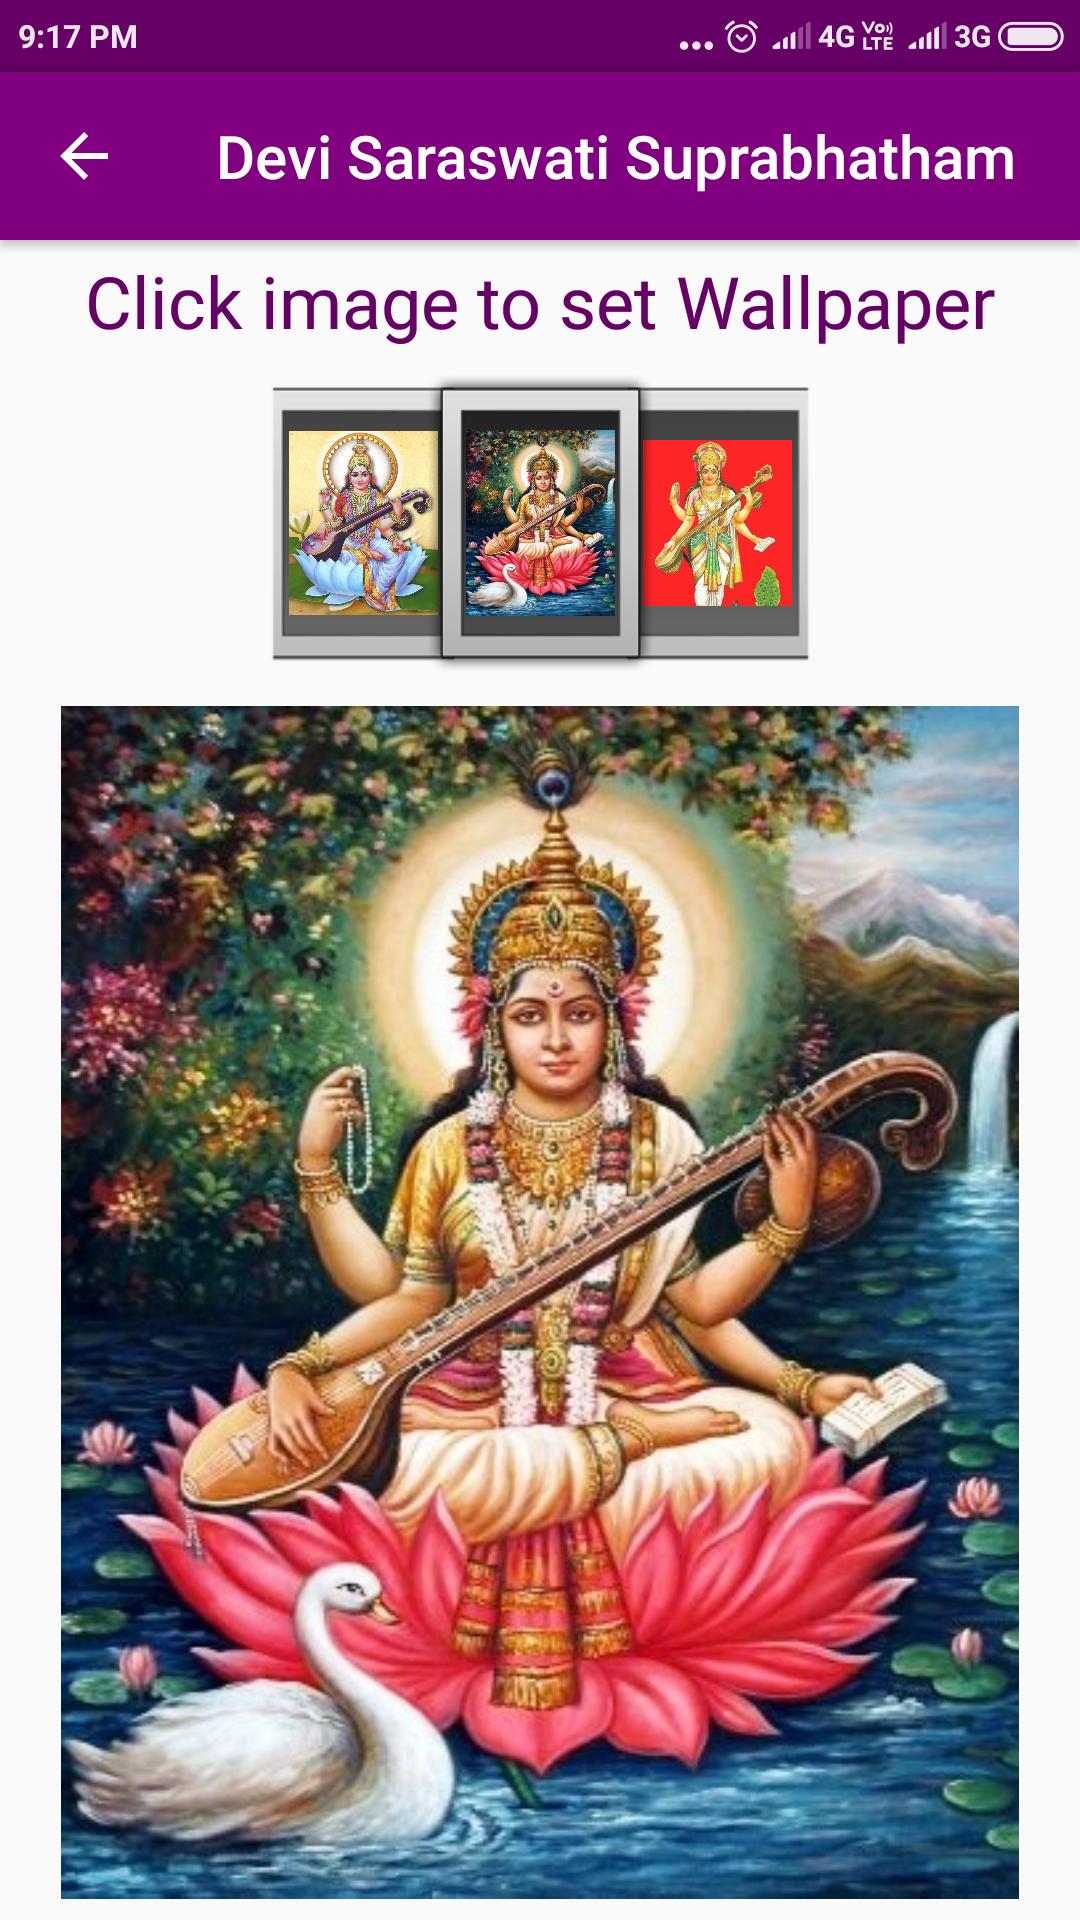 Сарасвати деви. Сарасвати богиня. Сарасвати богиня мантра. Бхактисидханта Сарасвати.